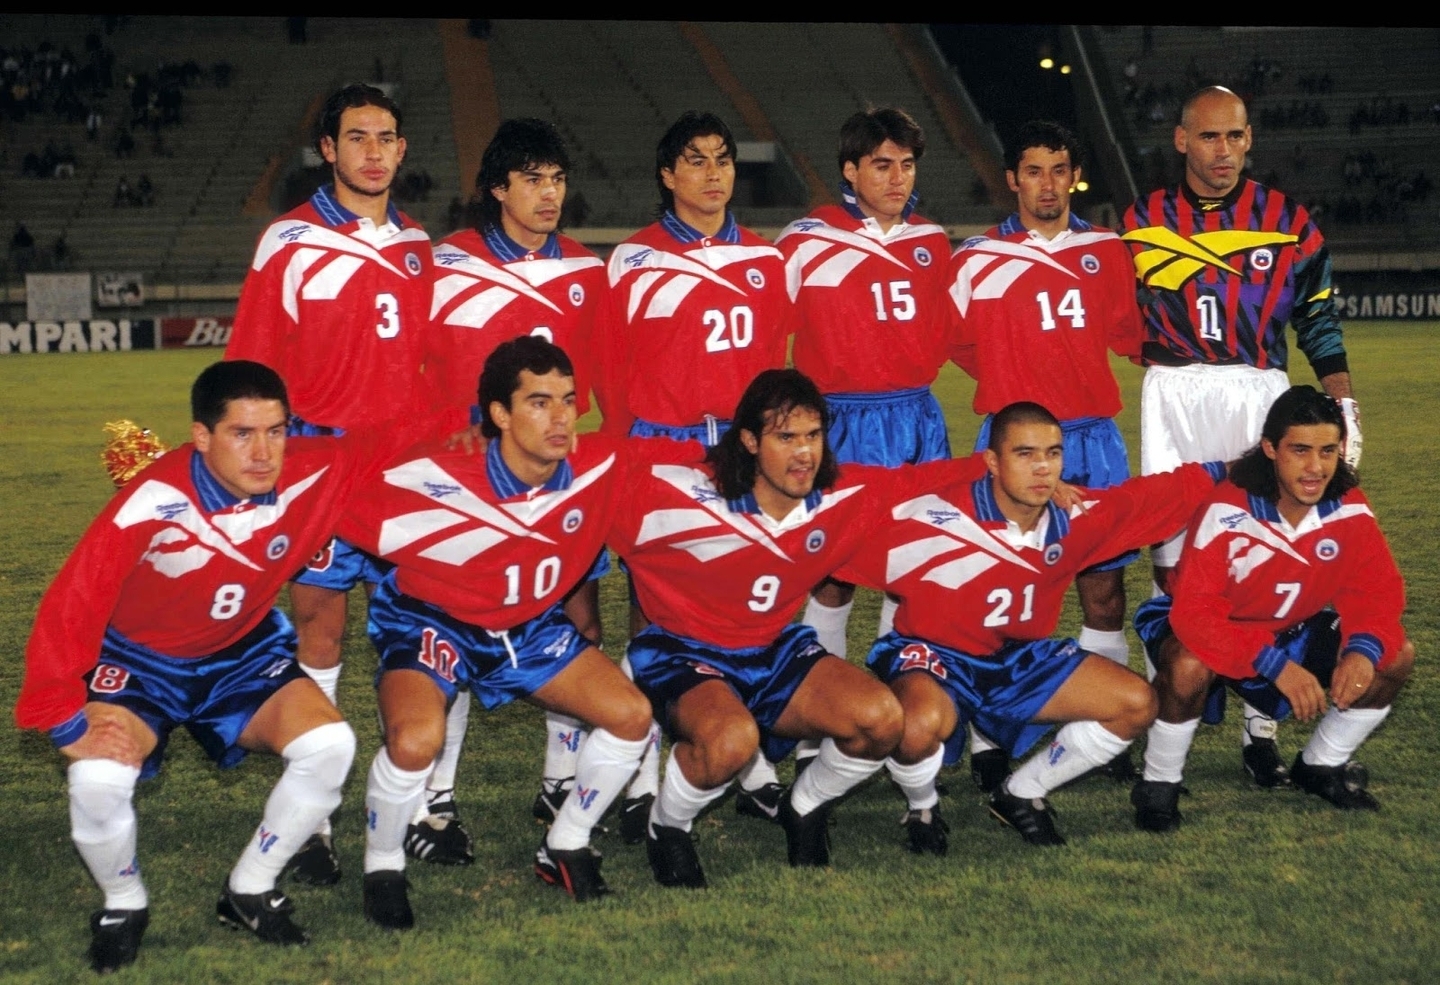 formacion-chile-copa-america-1997-17-junio.jpg